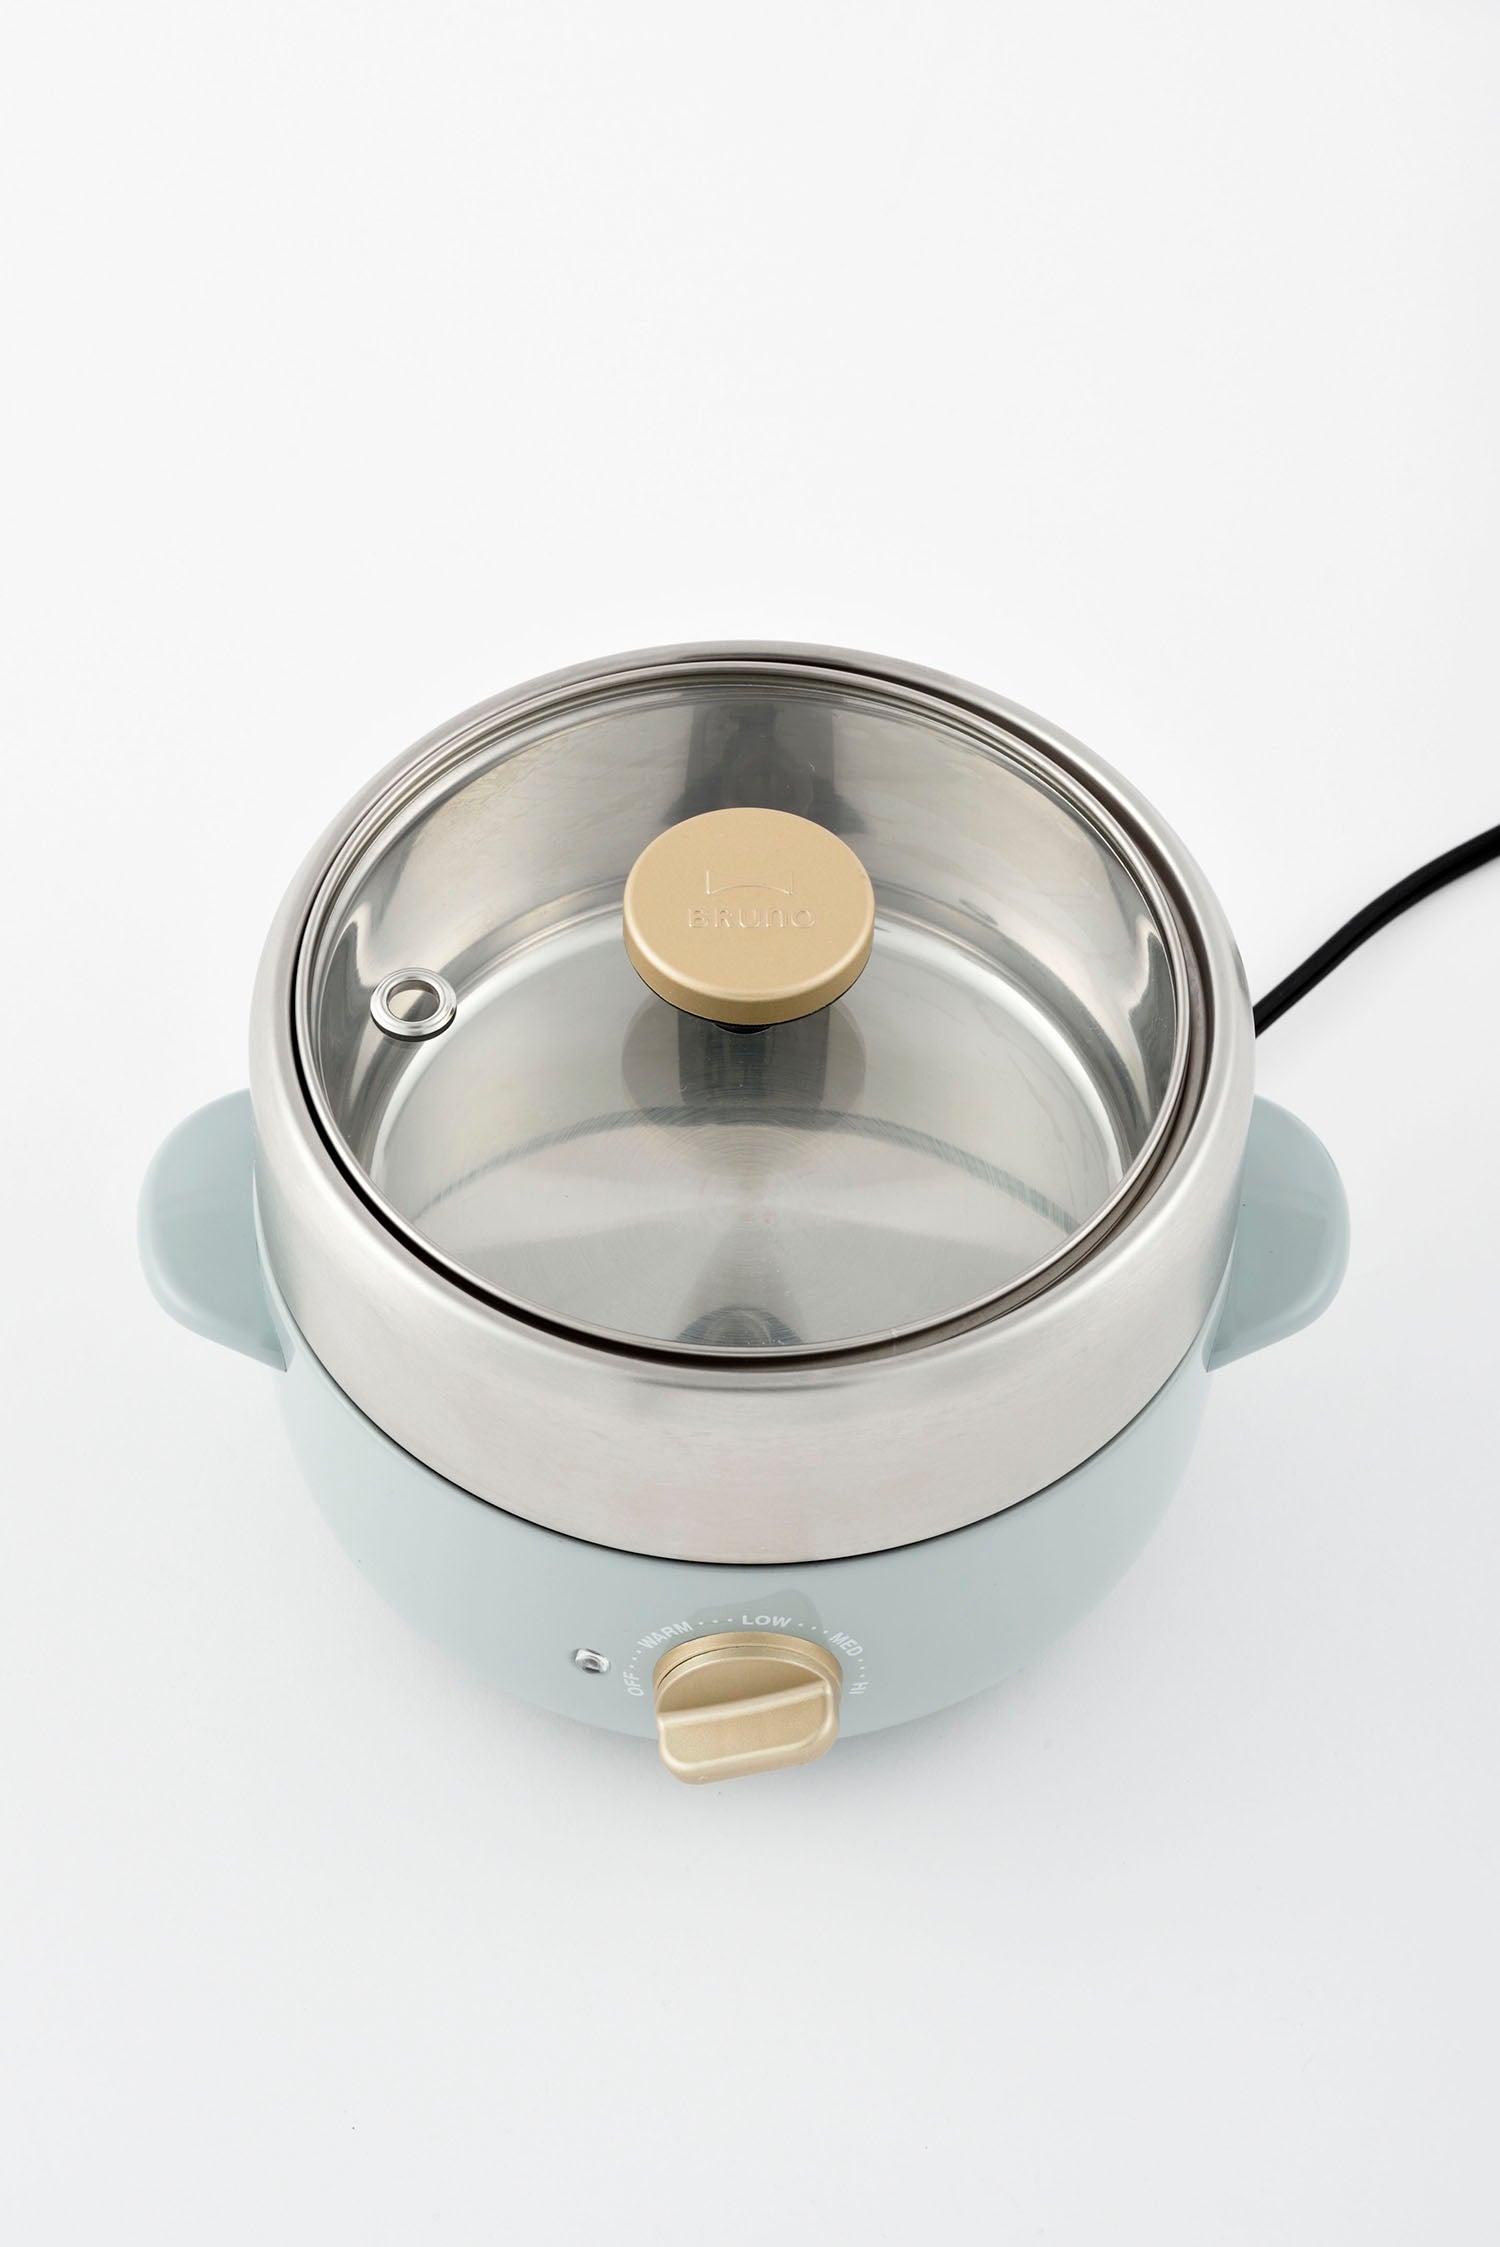 BRUNO Compact Multi Grill Pot - White BOE115-WH